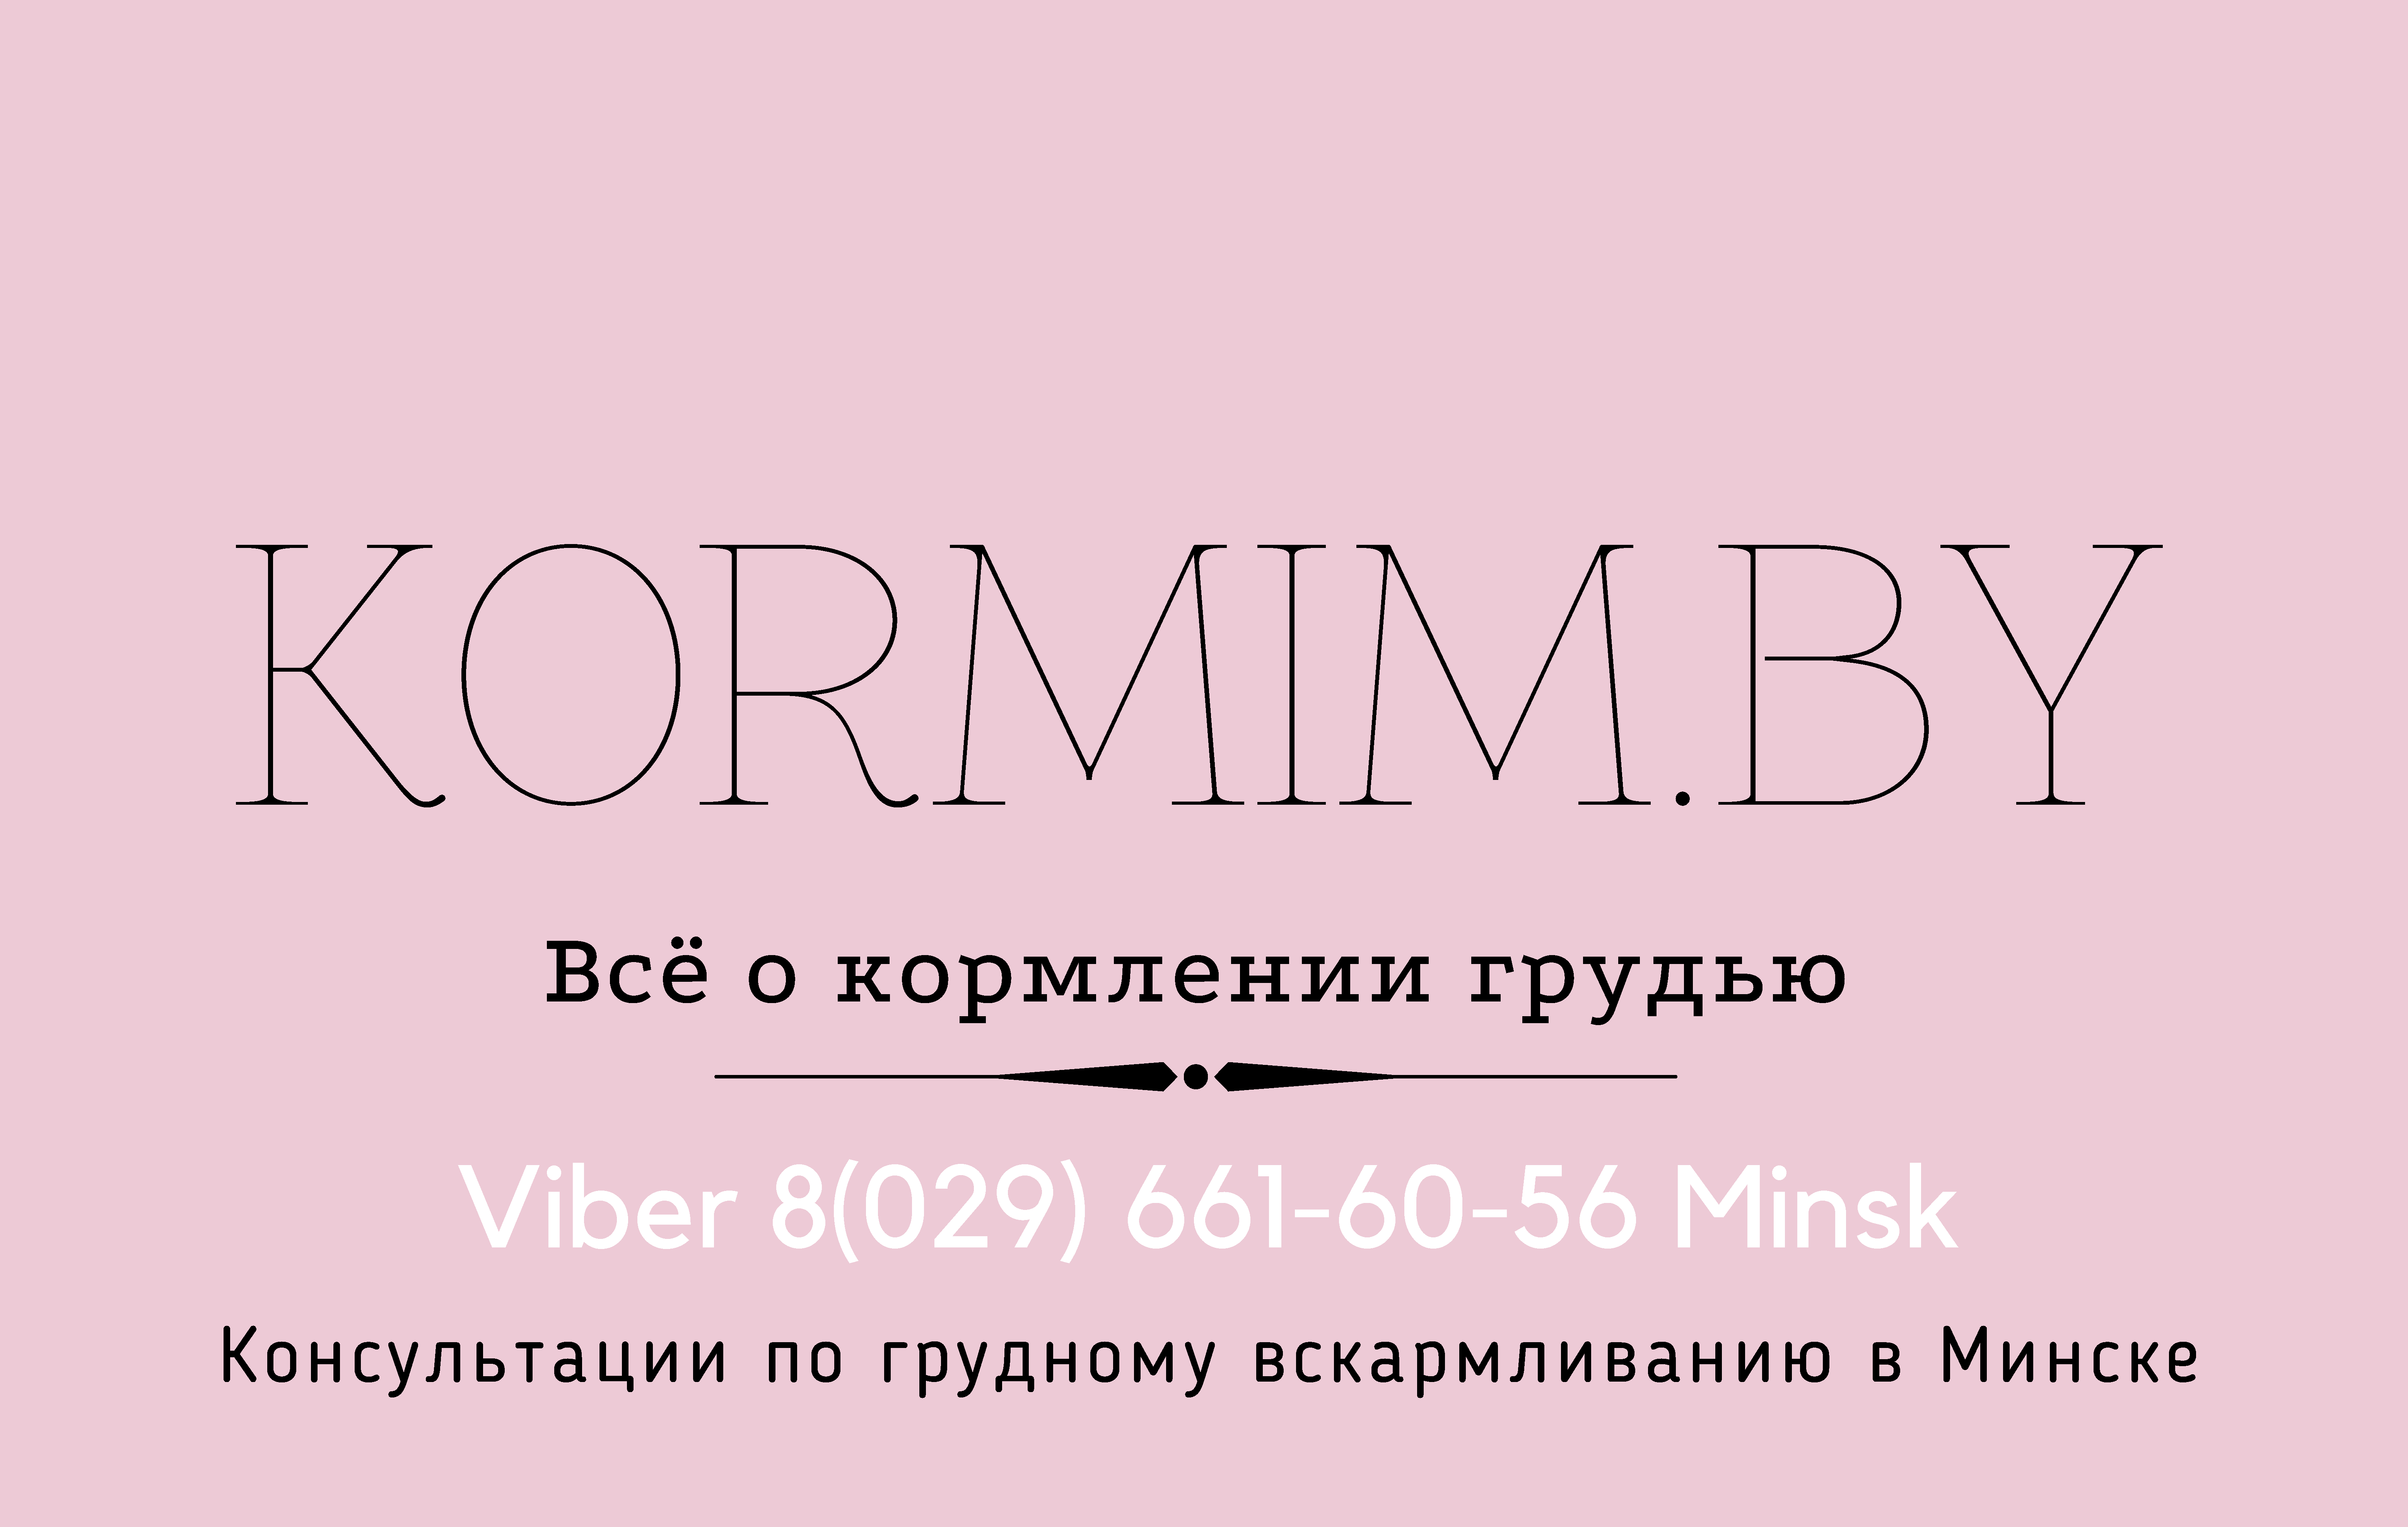 Консультант коуч-ICTA по грудному вскармливанию в Минске 8(029)661-60-56